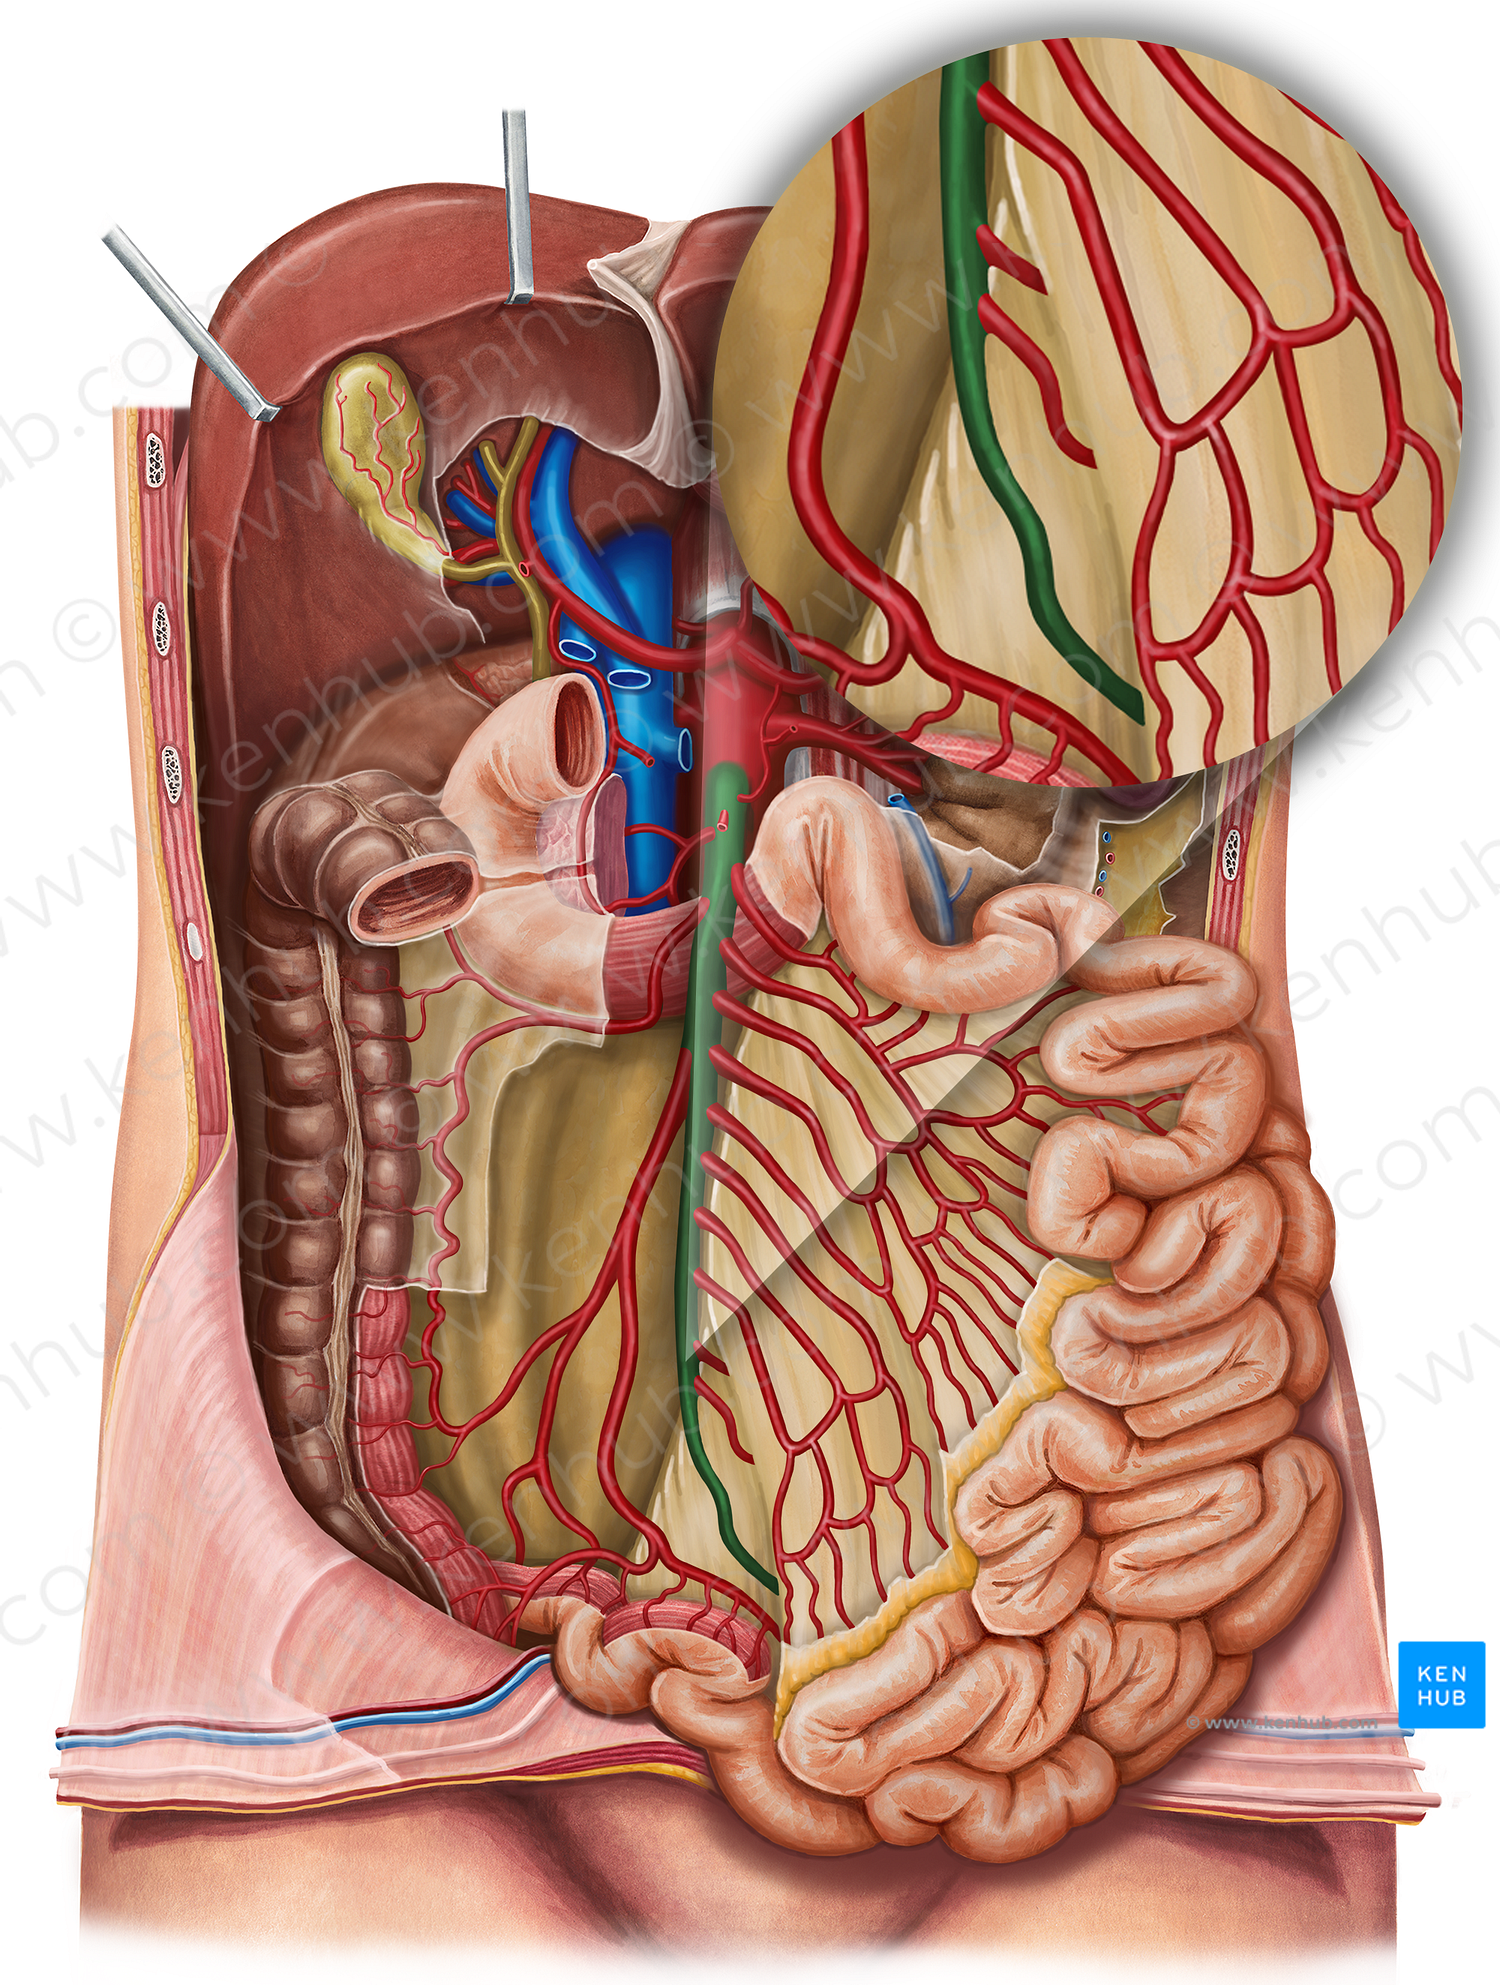 Superior mesenteric artery (#1540)